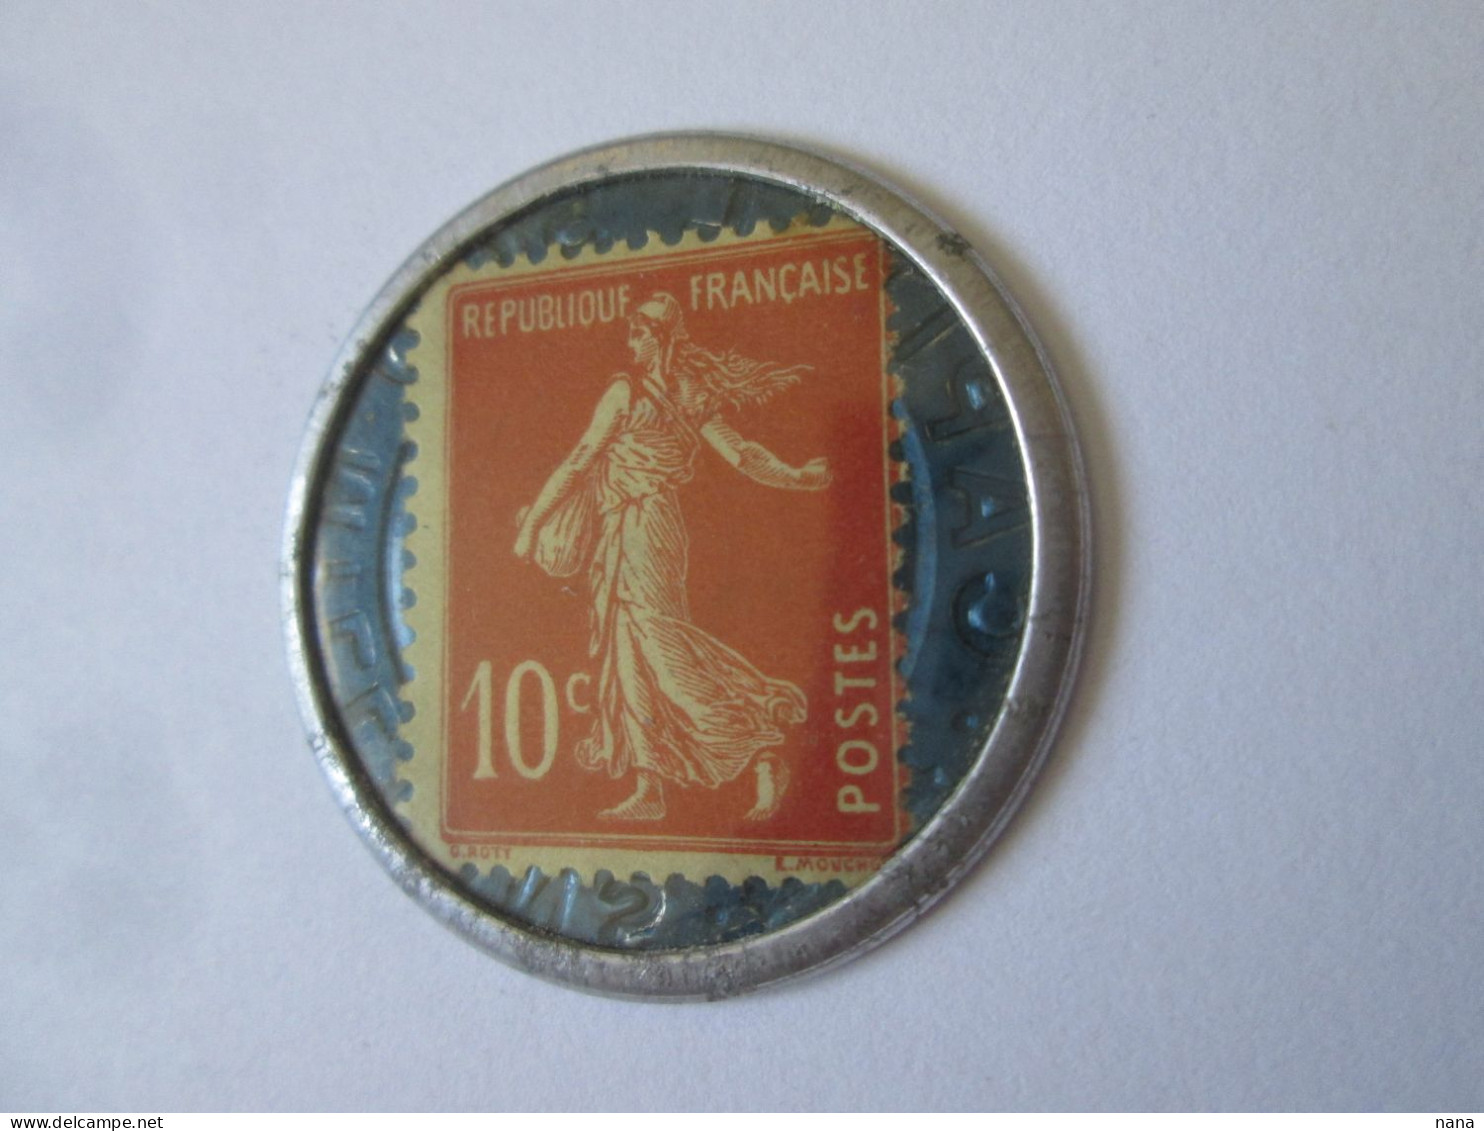 France:Timbre Monnaie 10 Centimes Societe Generale Neuf Vers 1920/Societe Generale 10 Centimes UNC Coin Stamp 1920s - Bonds & Basic Needs